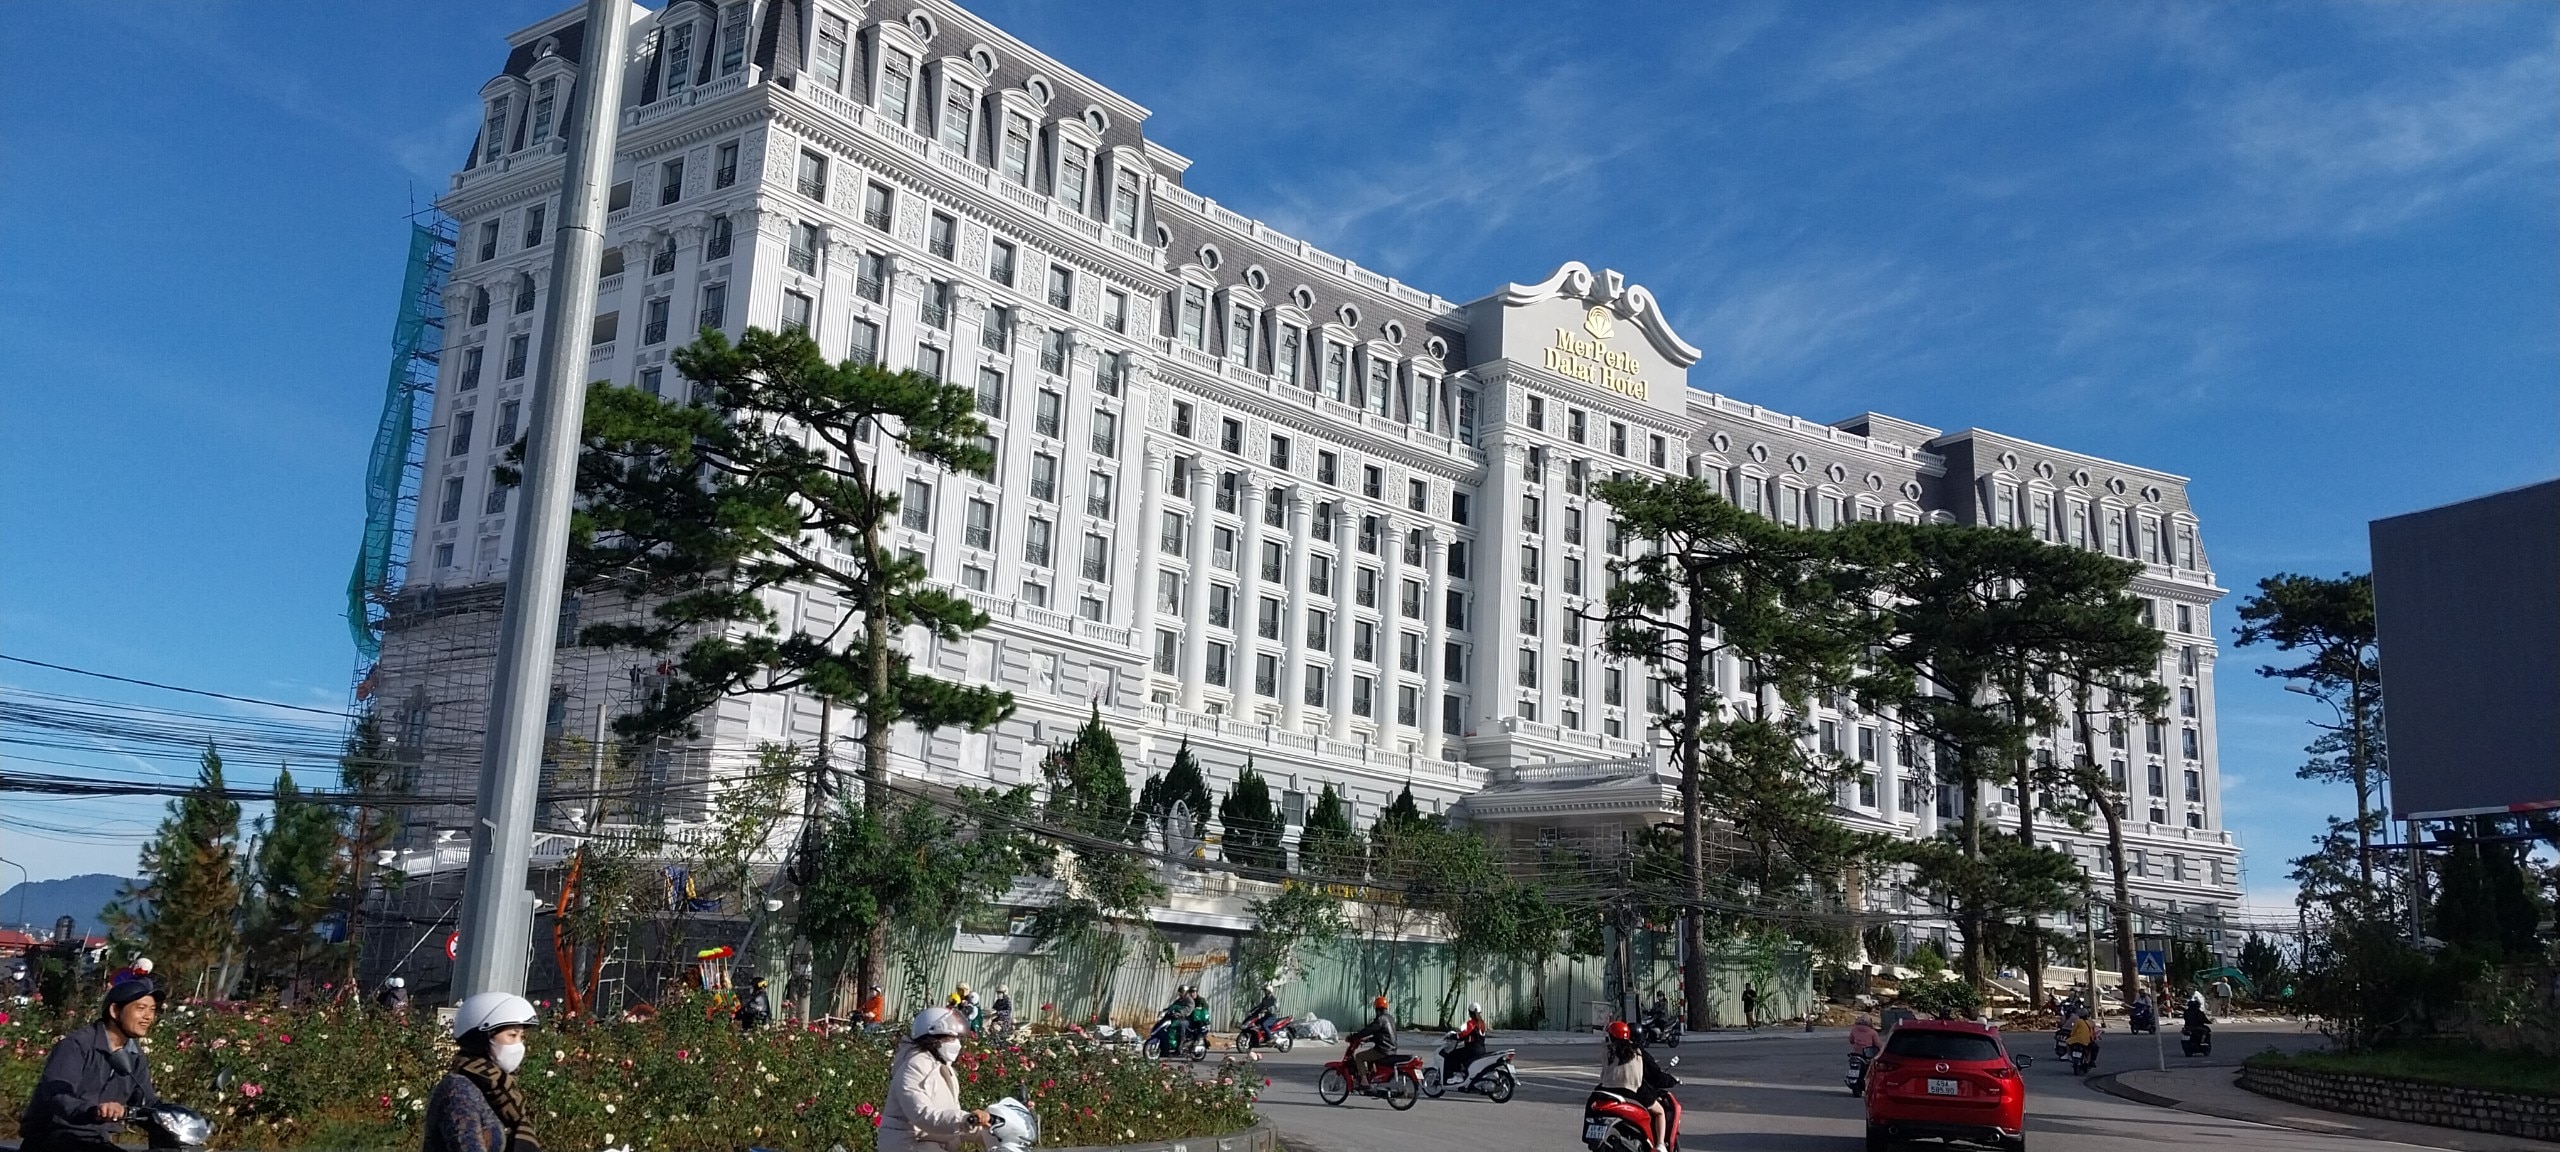 Bất động sản - Lâm Đồng: Đình chỉ công trình khách sạn 5 sao do xây dựng vượt phép